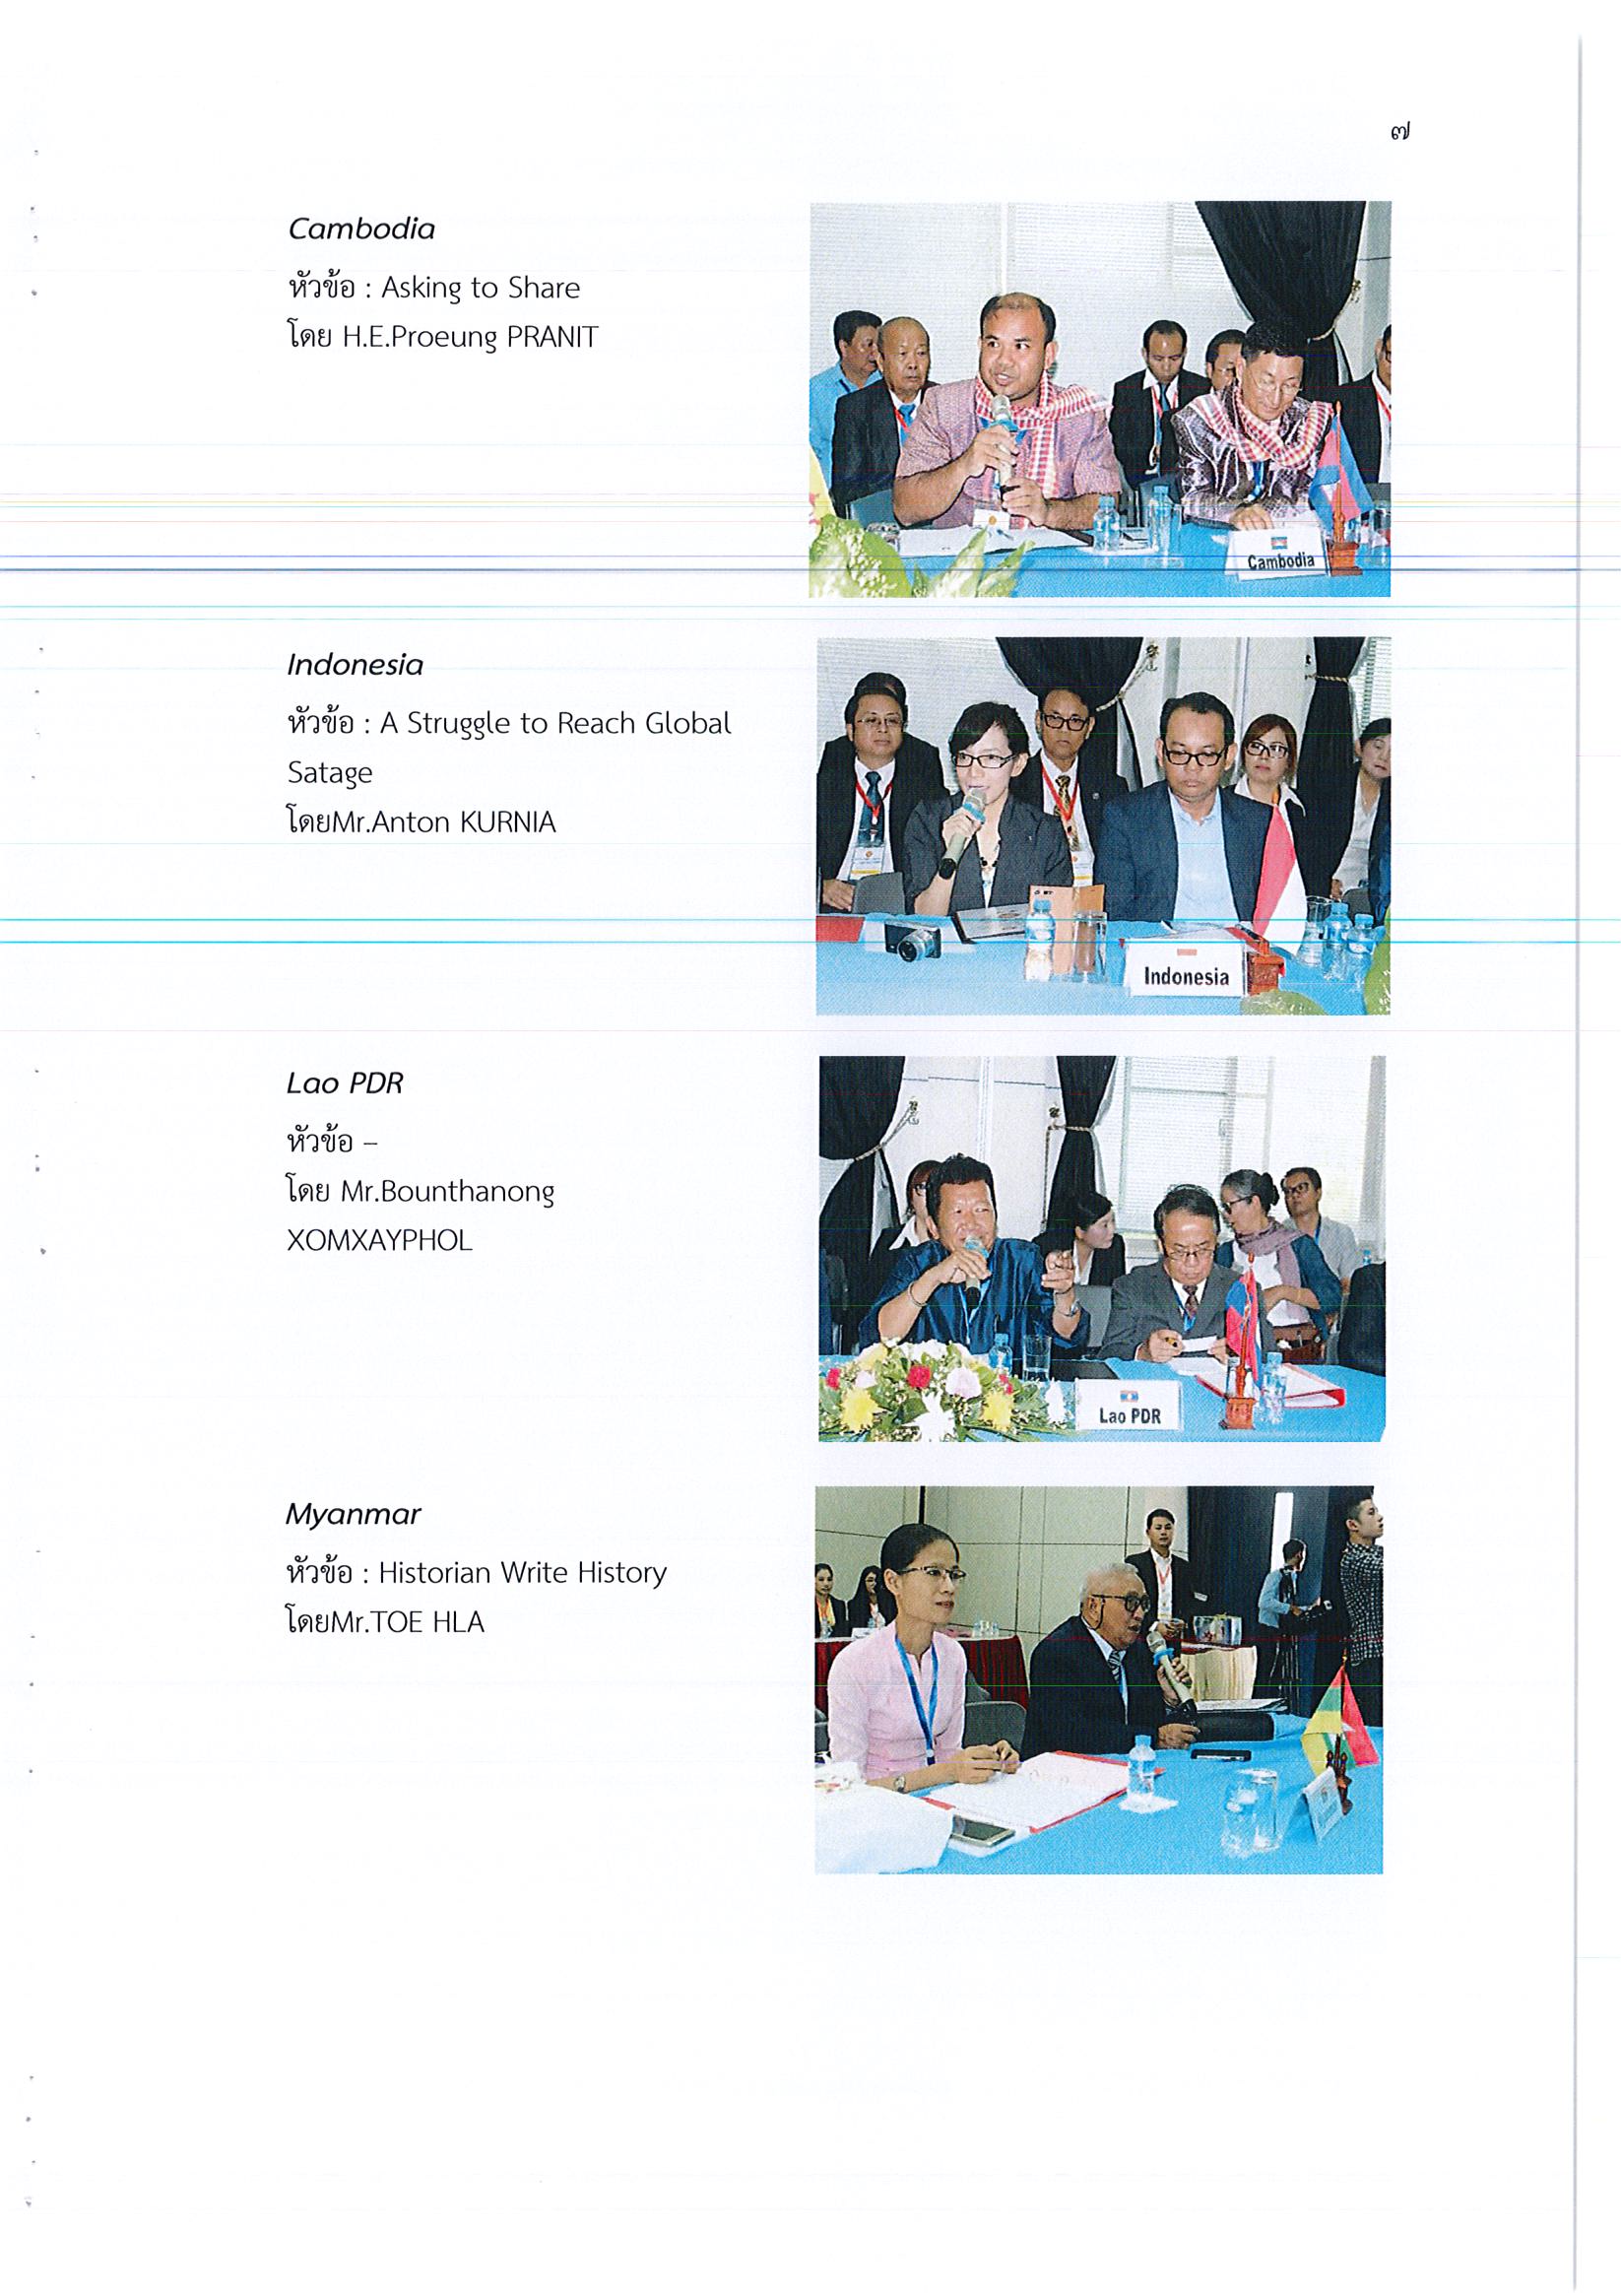 รายงานการเดินทางไปราชาการ ณ สาธารณรัฐประชาธิปไตยประชาชนลาว ระหว่างวันที่ 8 – 12 พฤษภาคม 2561 โครงการประชุมสัมมนานักเขียนและนิทรรศการหนังสือวรรณกรรมอาเซียน